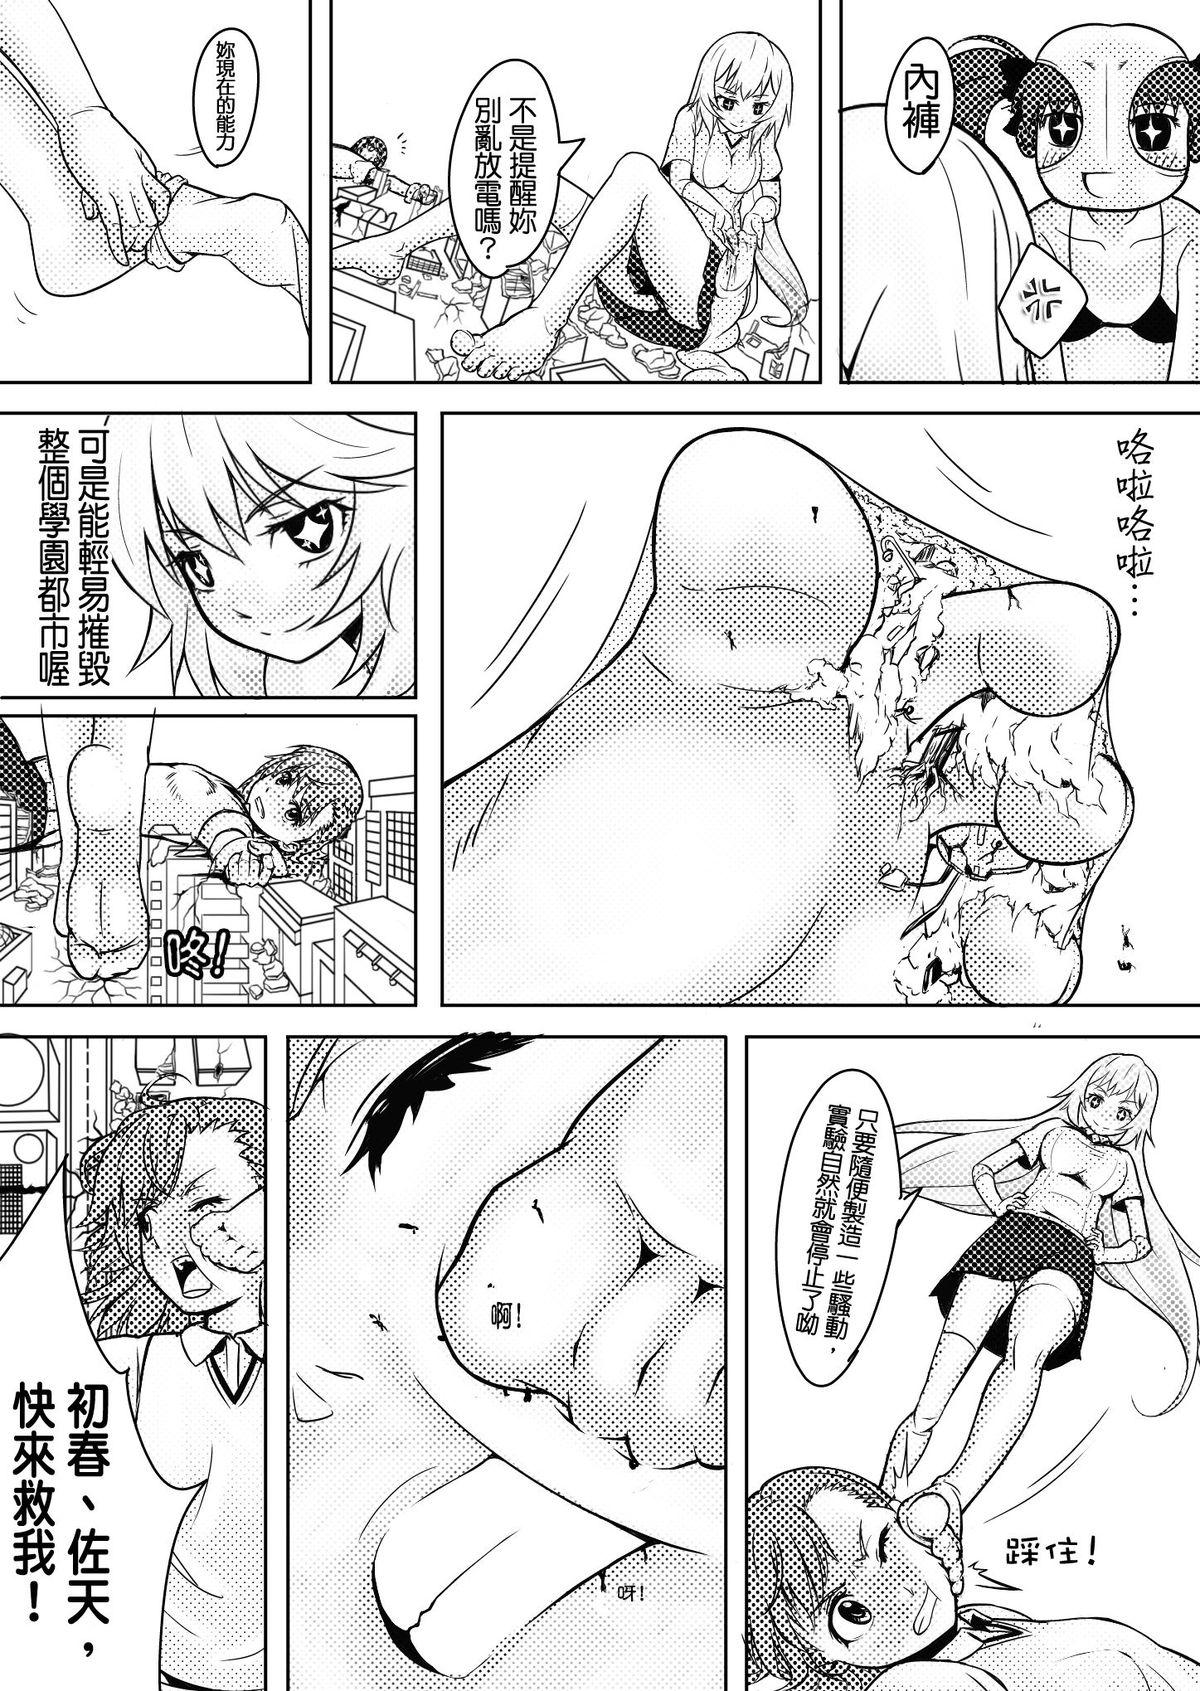 Young Petite Porn Toaru Shingeki no S Railgun - Toaru kagaku no railgun French - Page 7